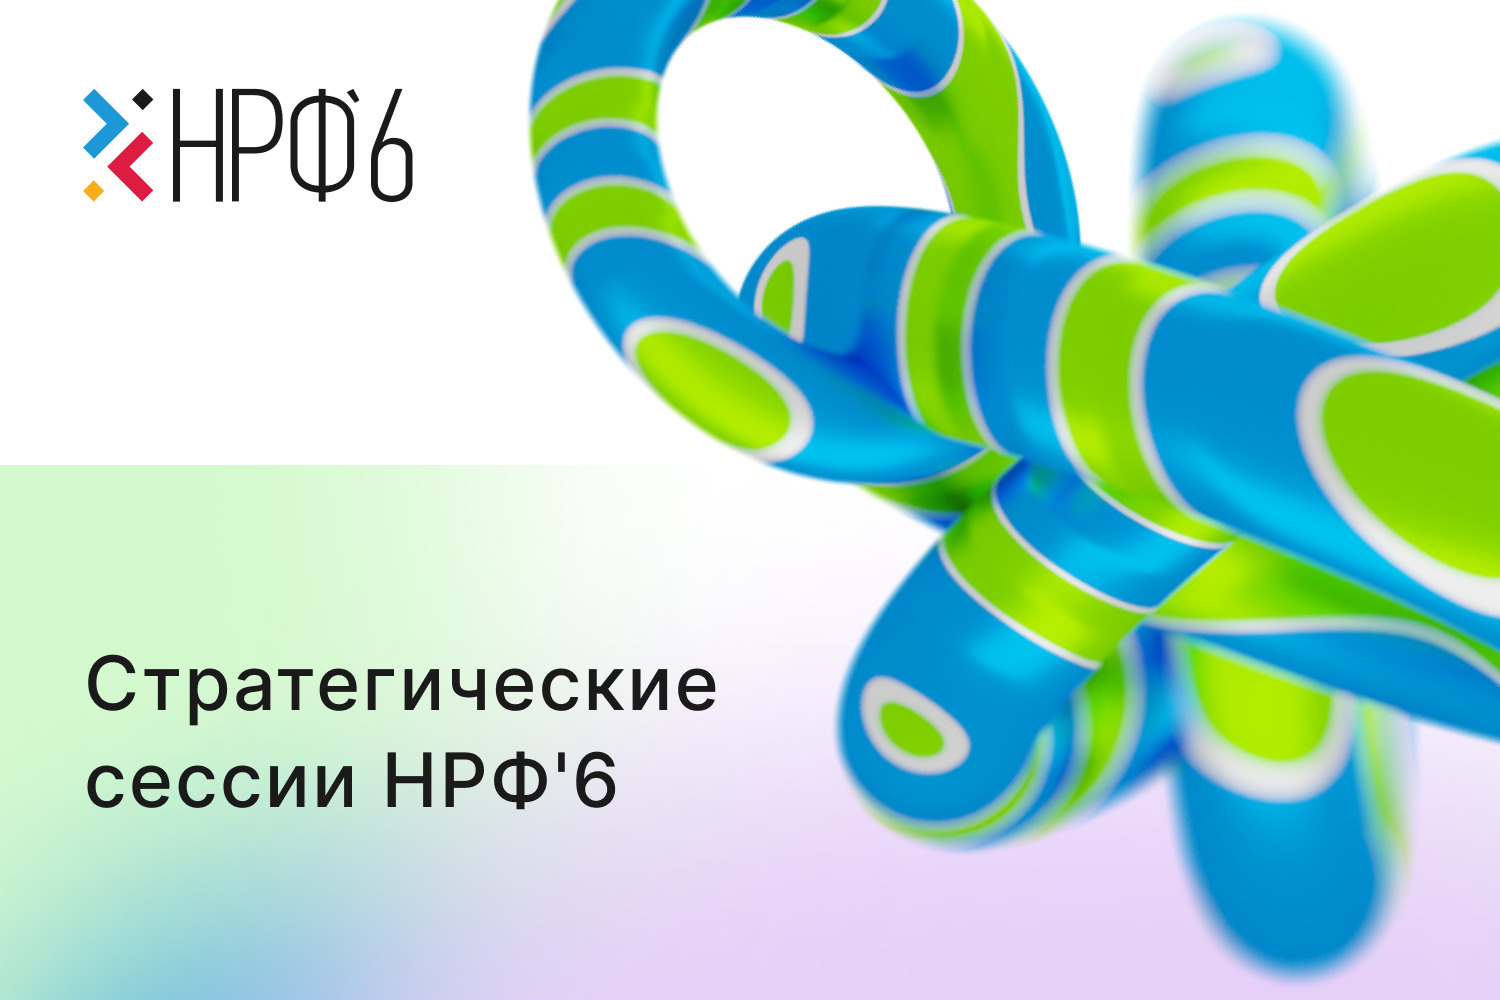 Мероприятие состоится 10 и 11 ноября в Москве